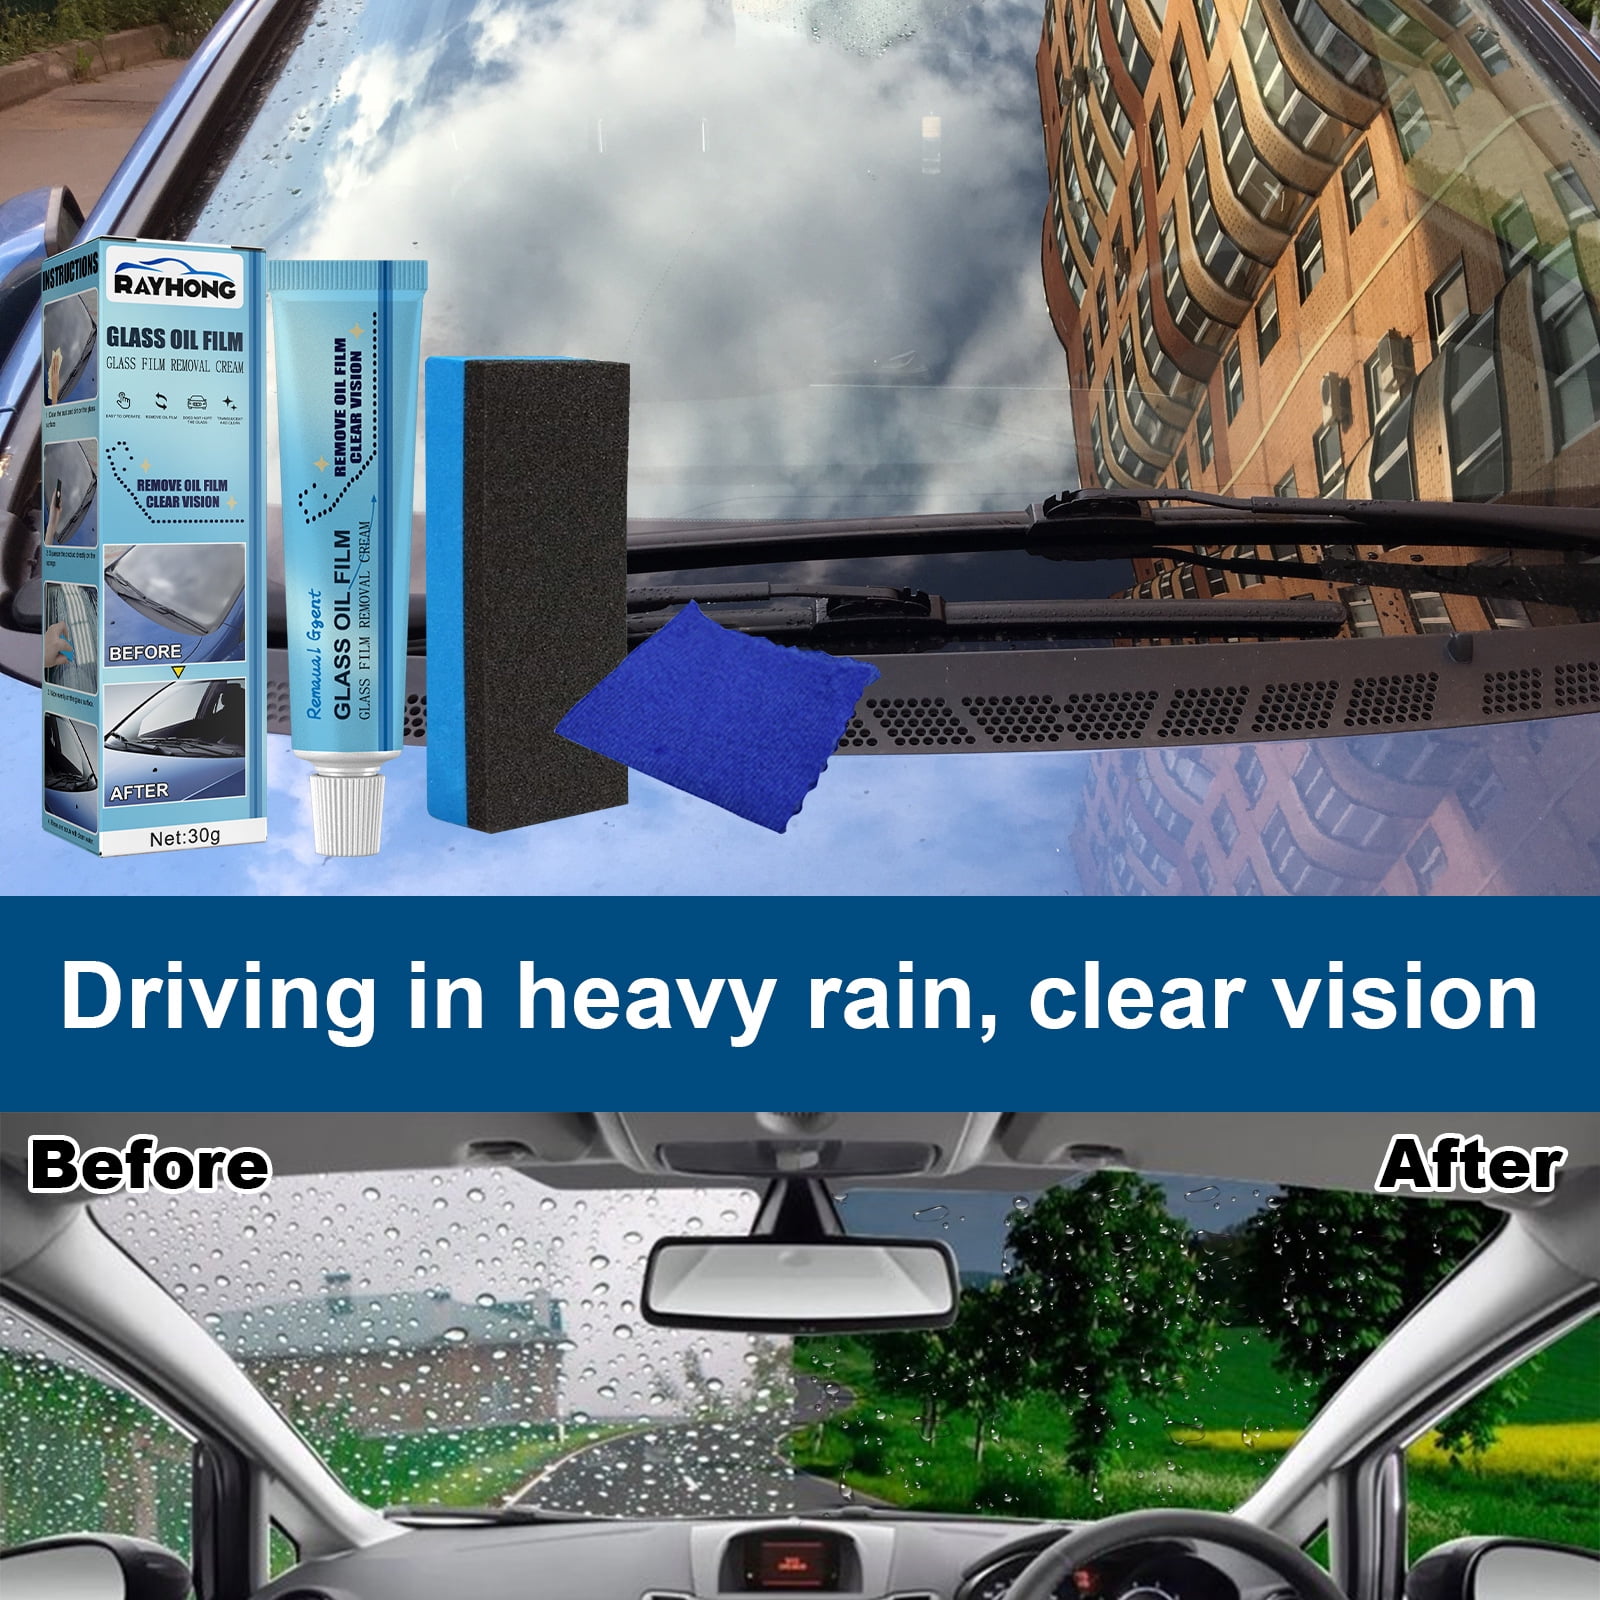 OIL FILM CLEANING EMULSION#car #auto #cleaner #rainrepellent #rainyday